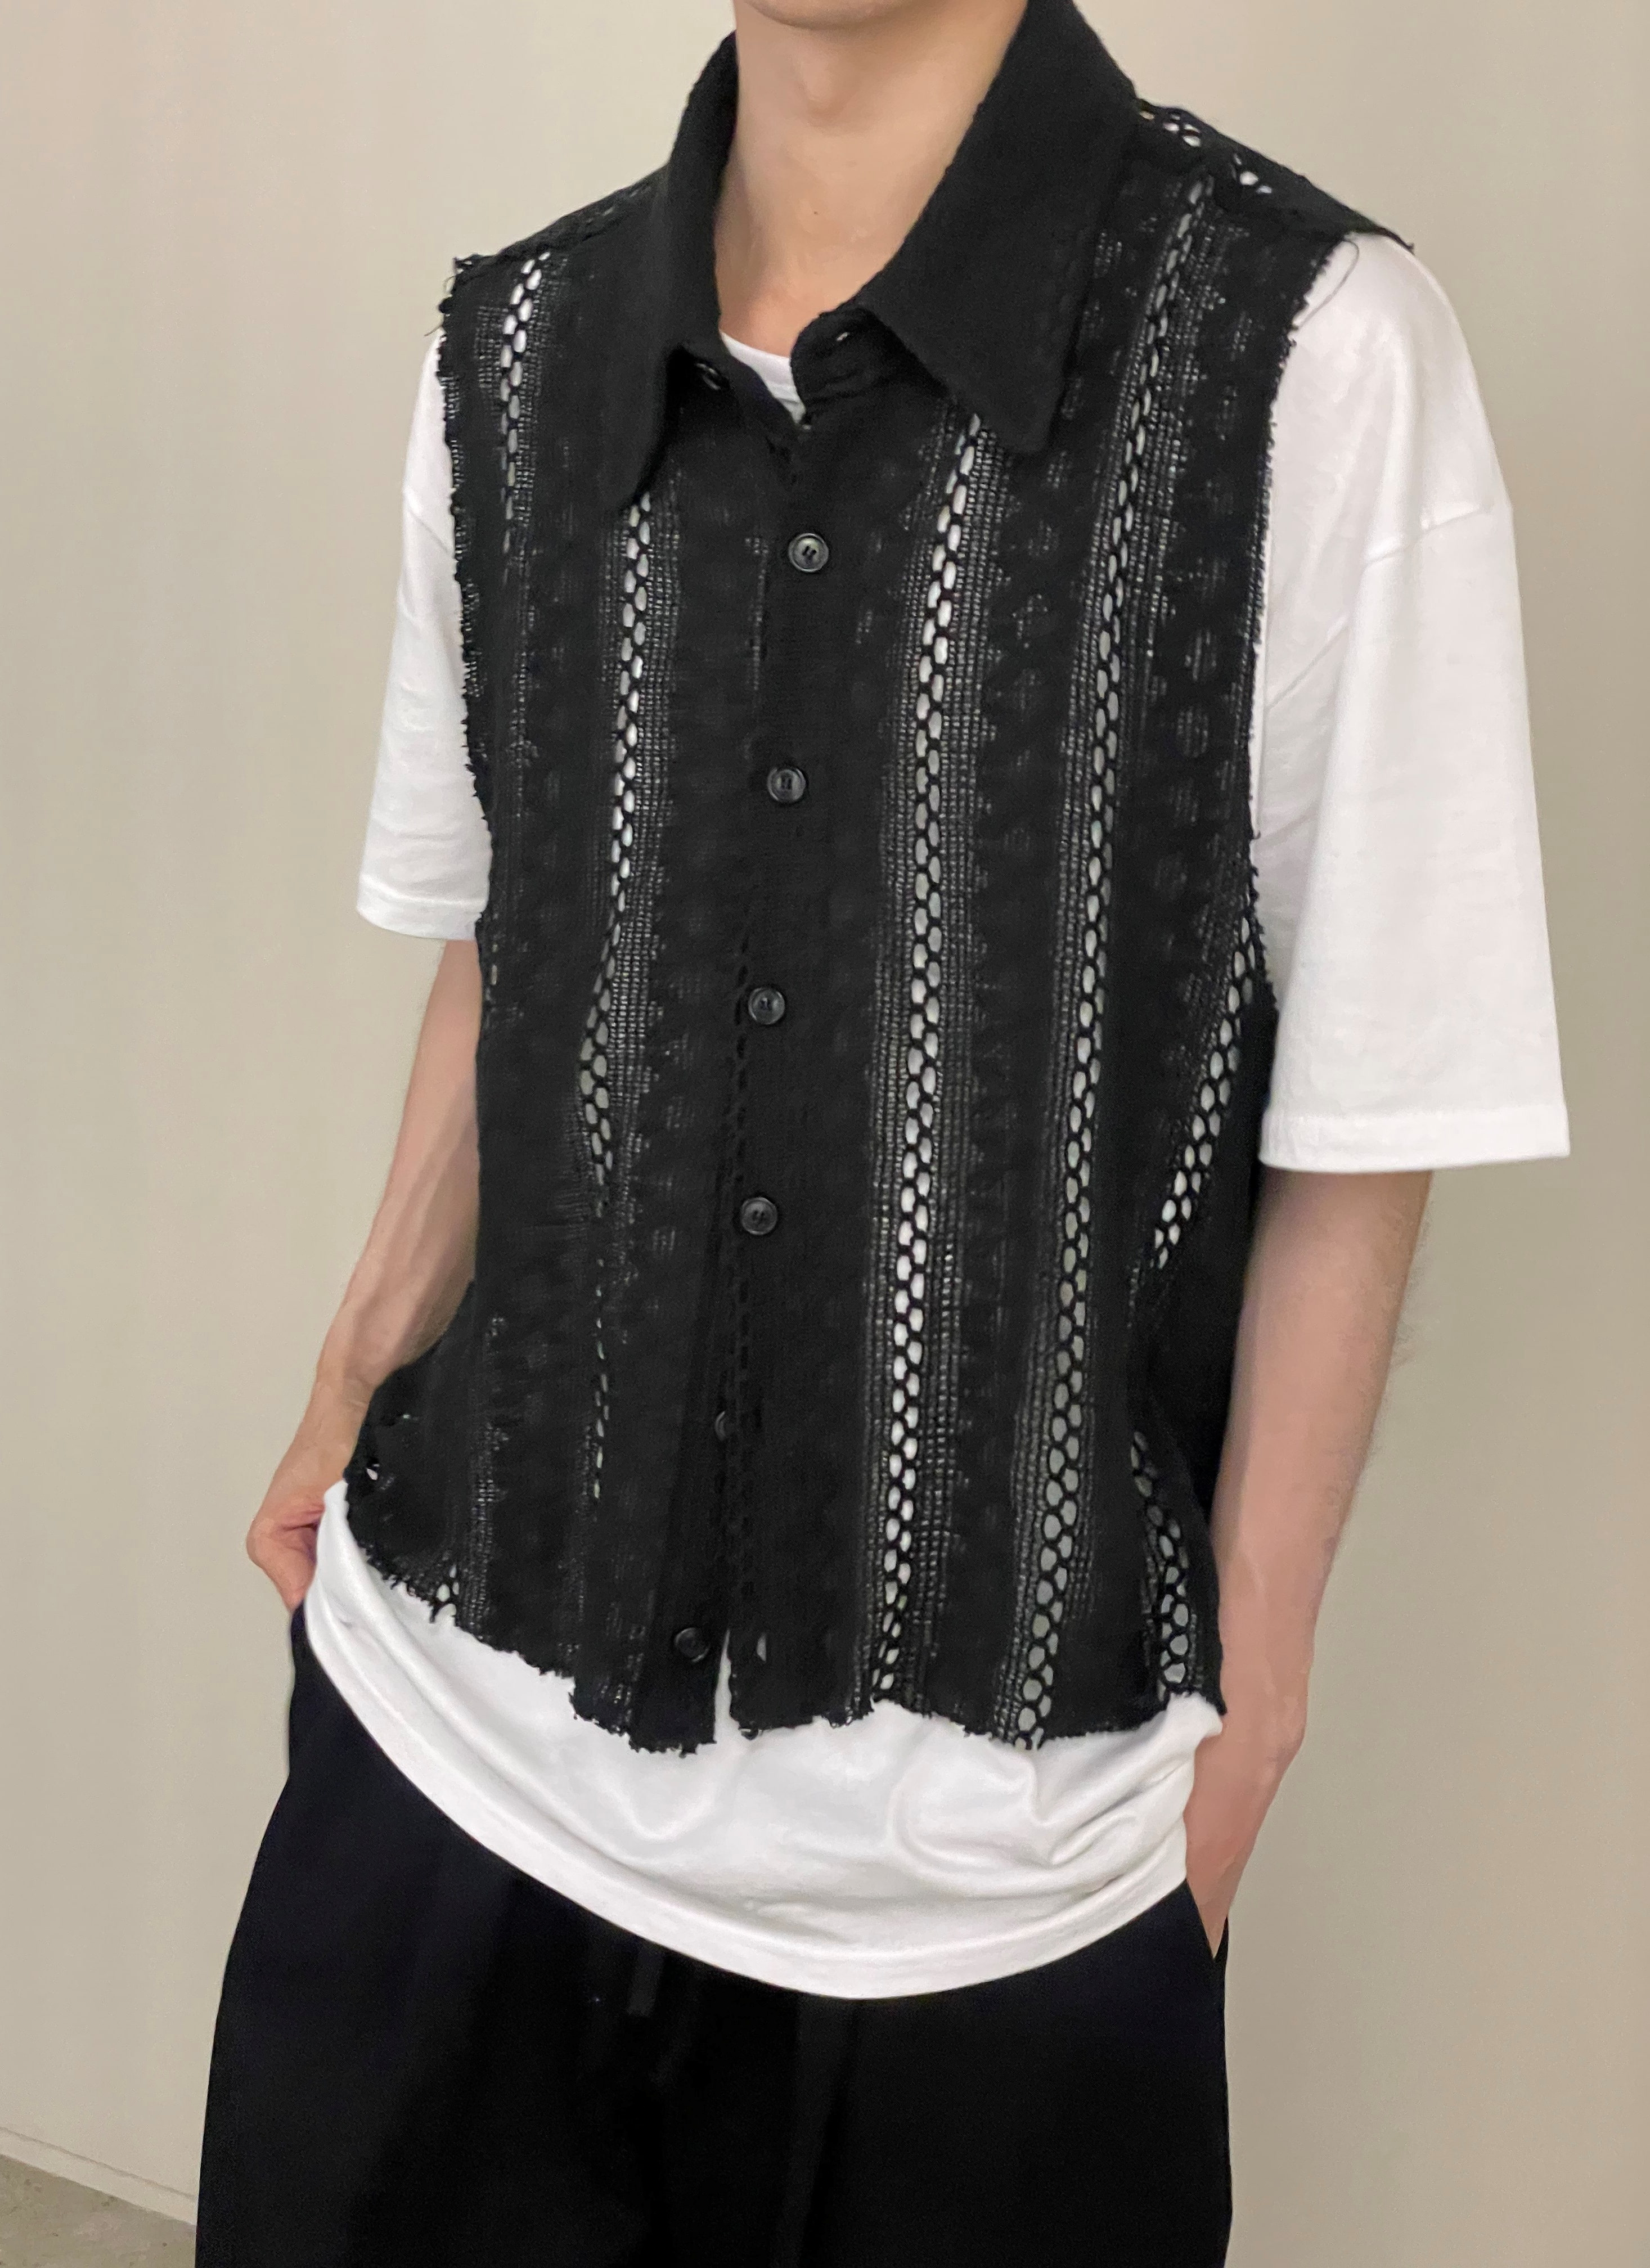 Nobleman lace vest